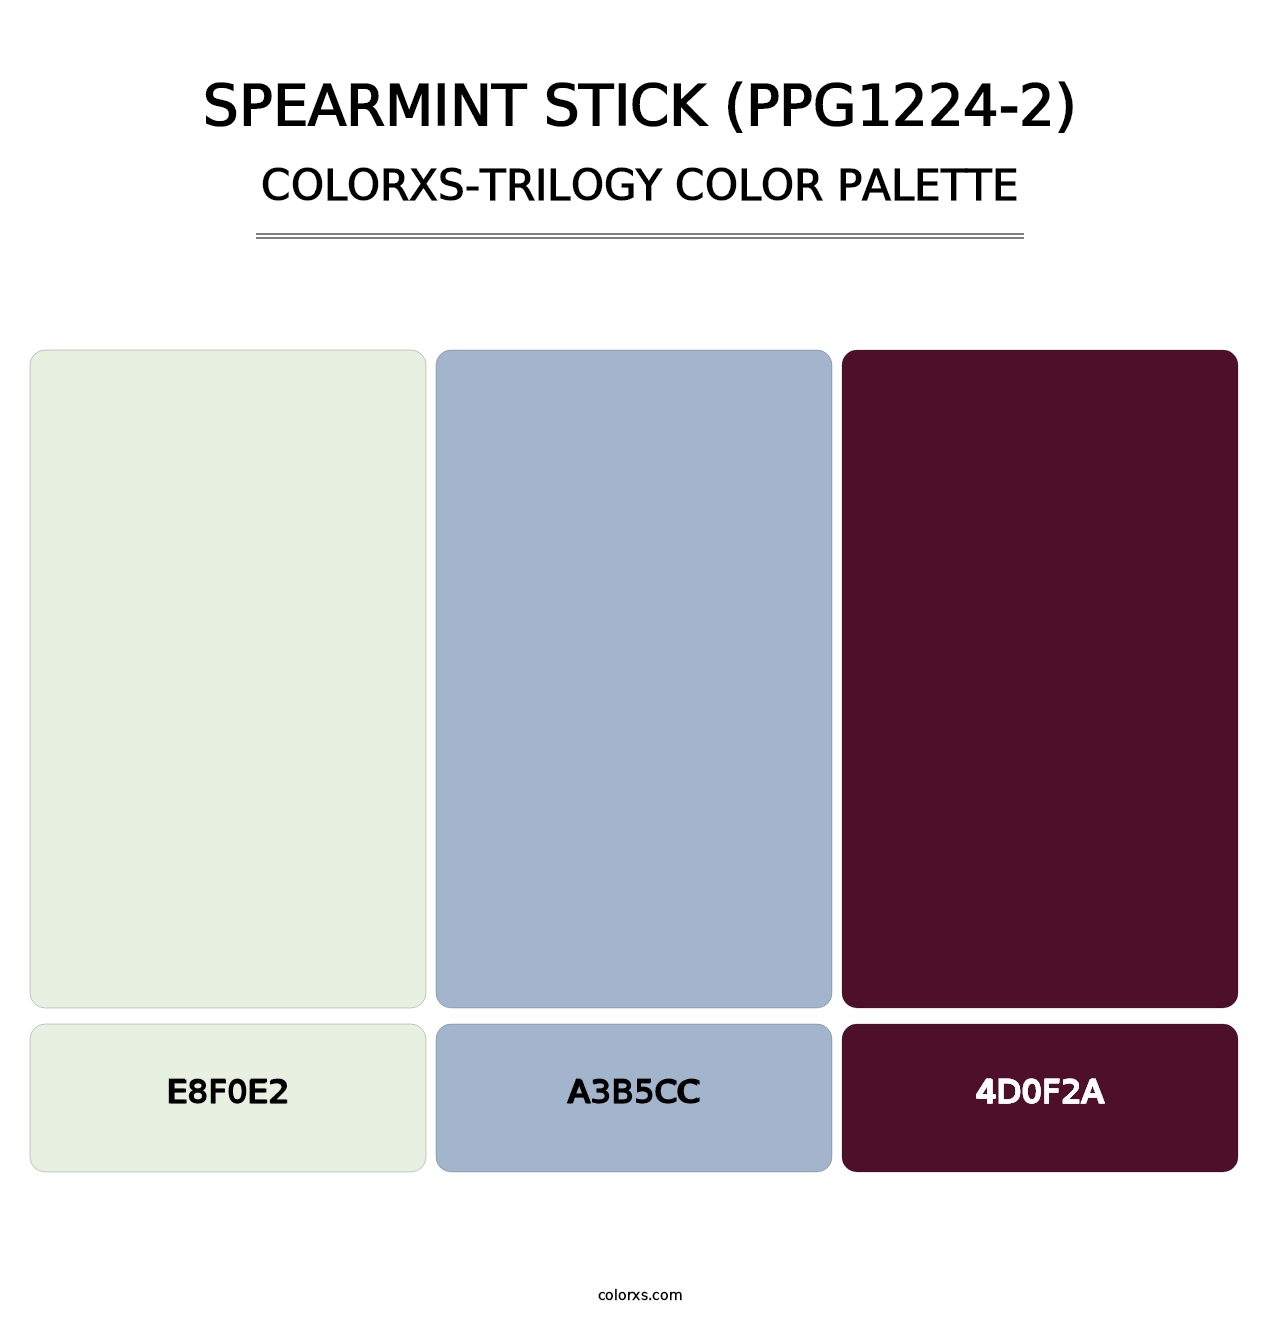 Spearmint Stick (PPG1224-2) - Colorxs Trilogy Palette